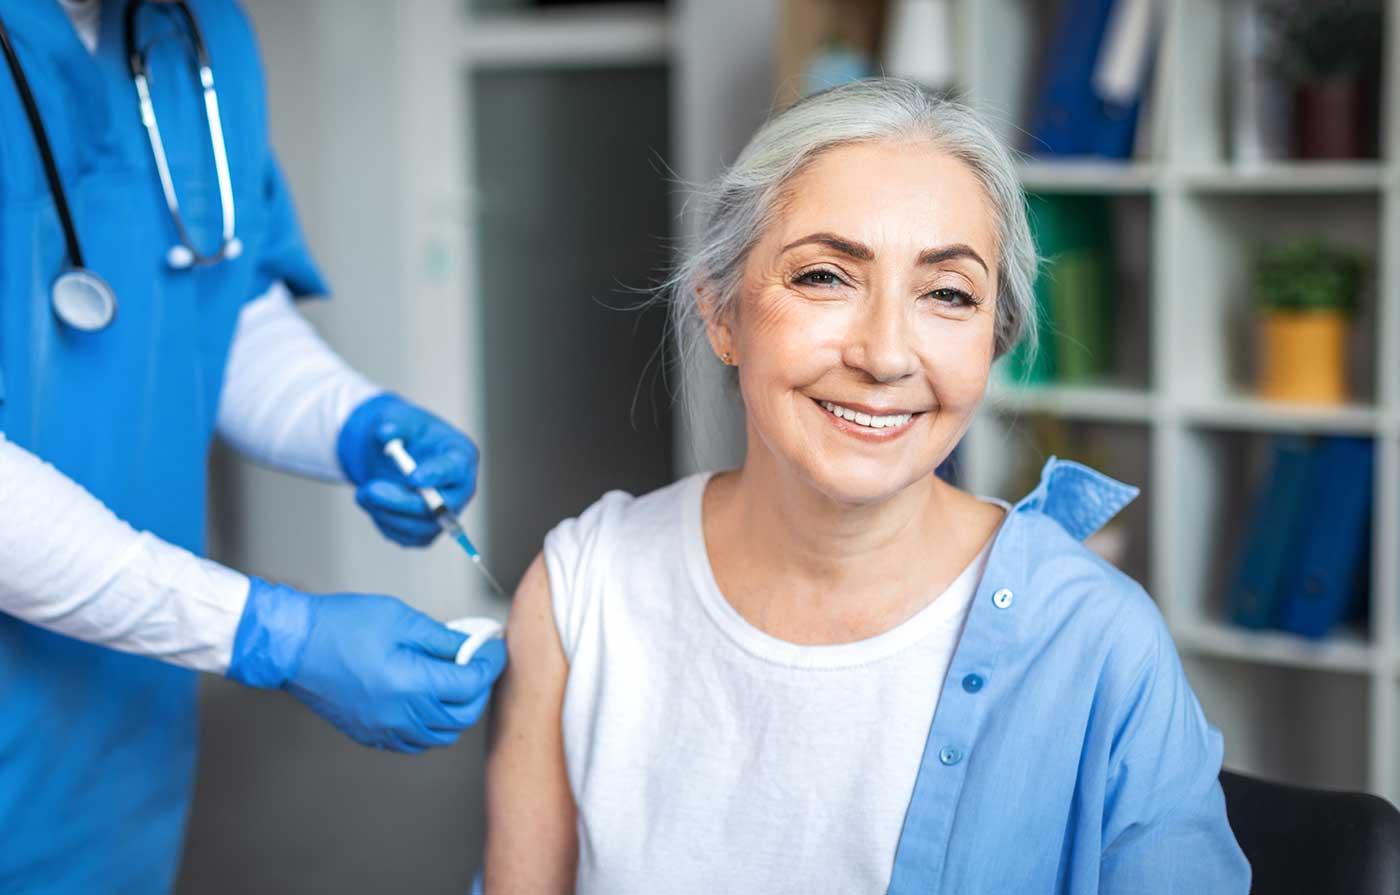 Senior woman getting shingles vaccine